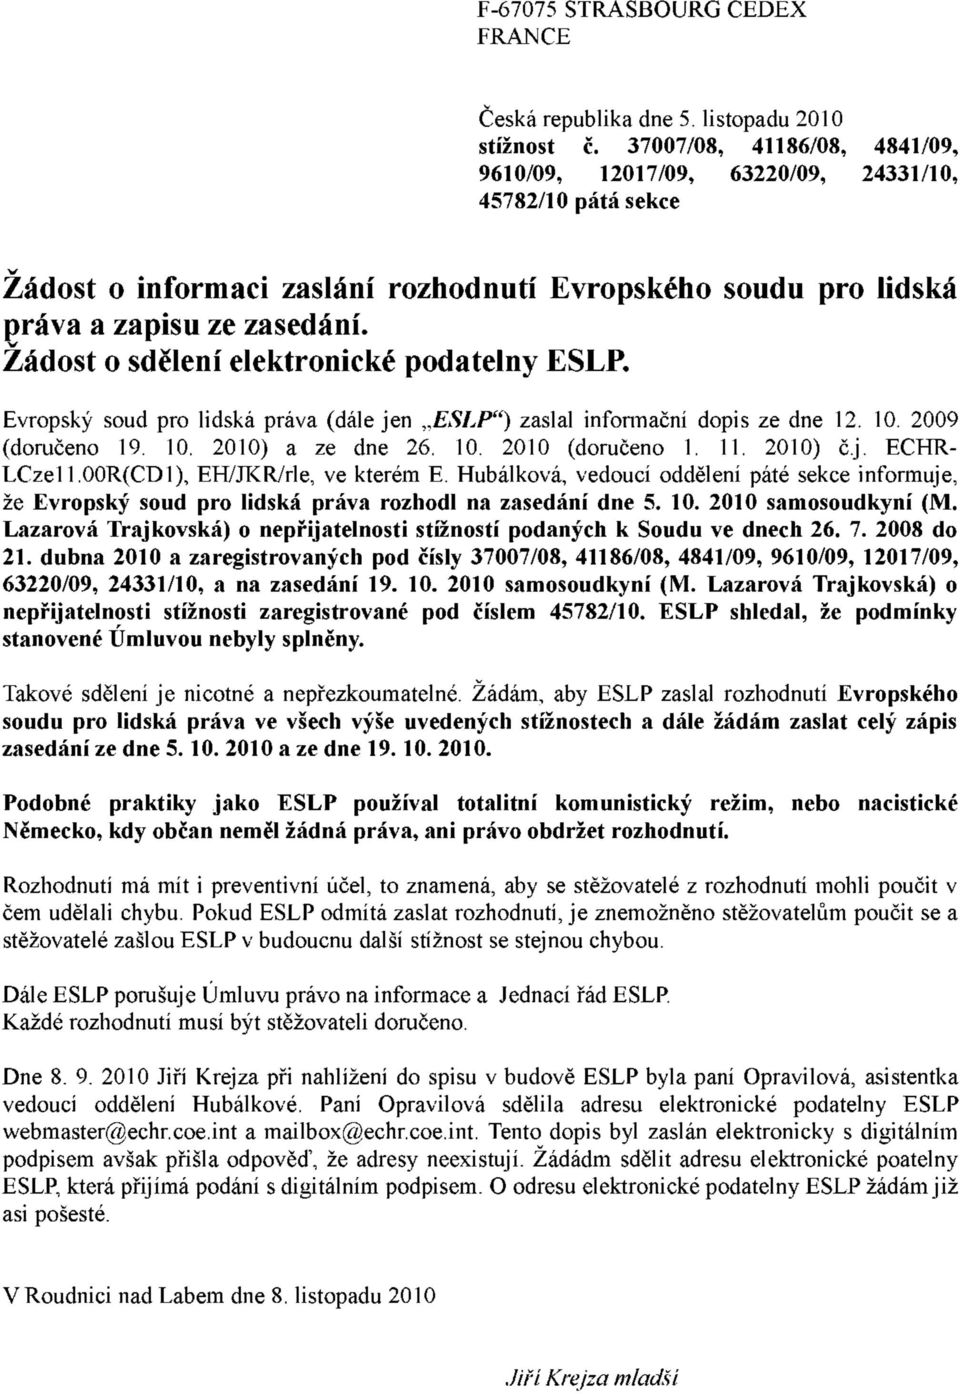 v Žádost o sdělení elektronické podatelny ESLP. Evropský soud pro lidská práva (dále jen ESLP") zaslal informační dopis ze dne 12. 10. 2009 (doručeno 19. 10. 2010) a ze dne 26. 10. 2010 (doručeno 1.